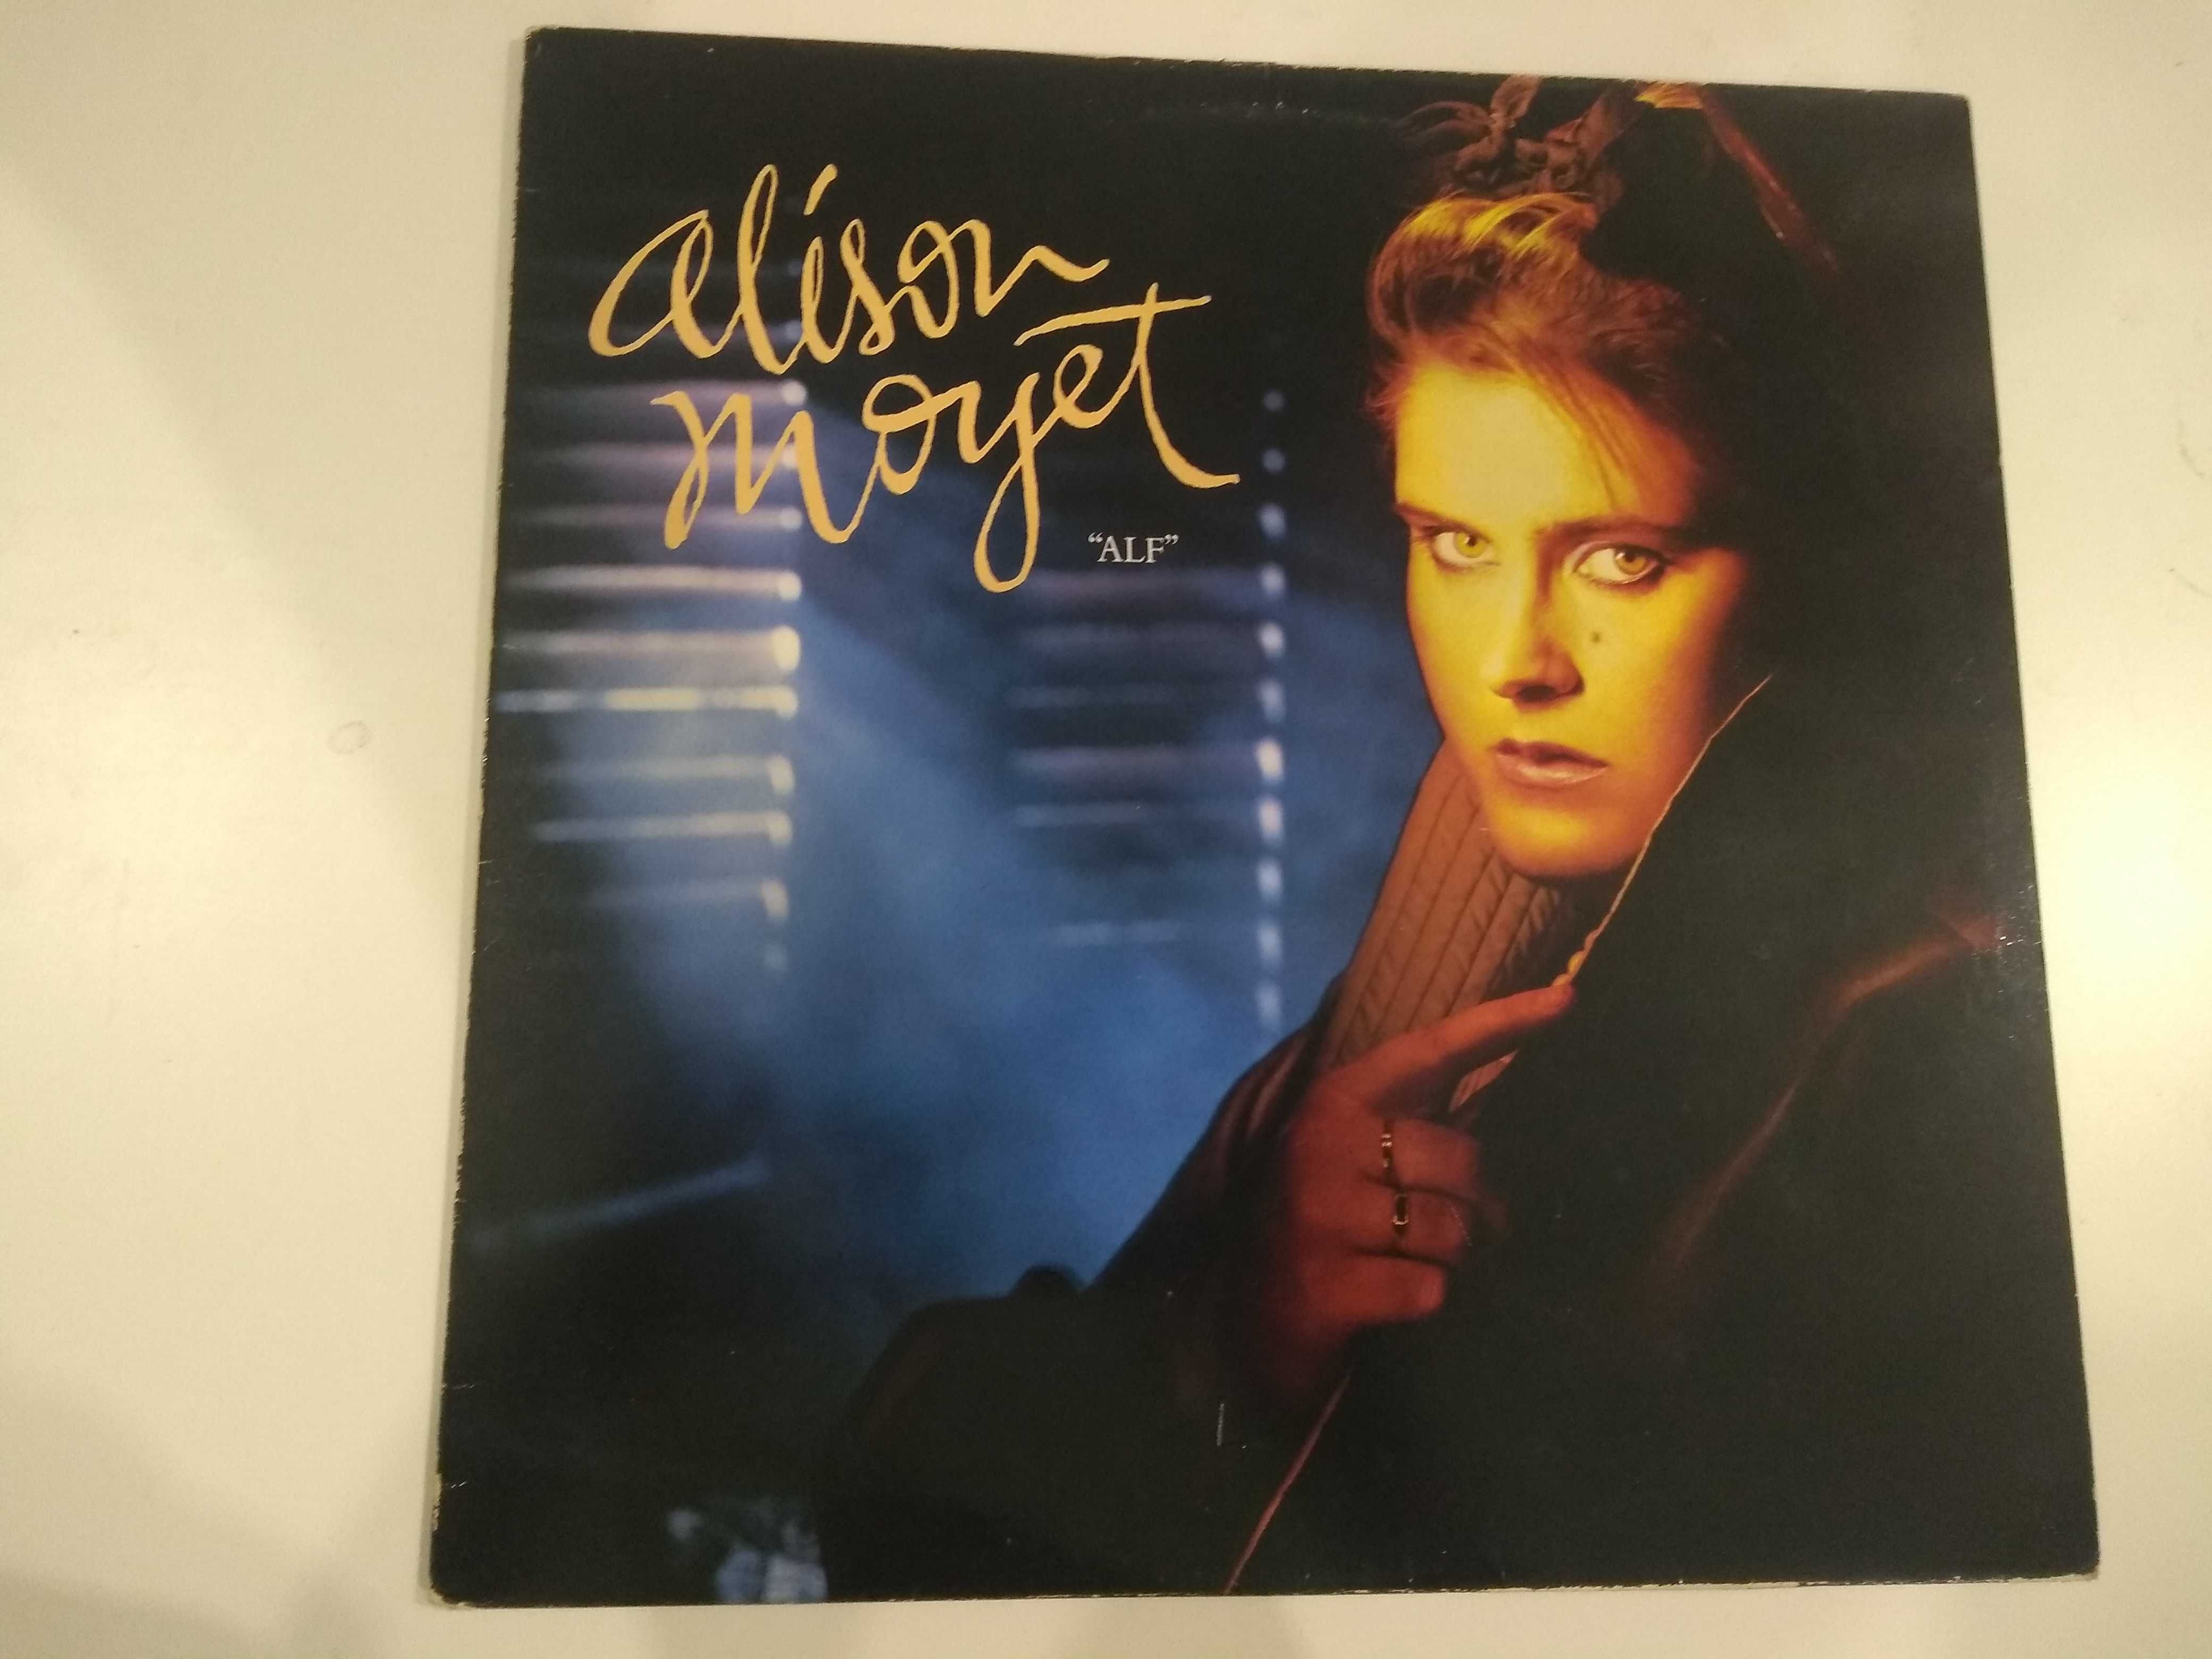 Dobra płyta - Alison Moyet alf